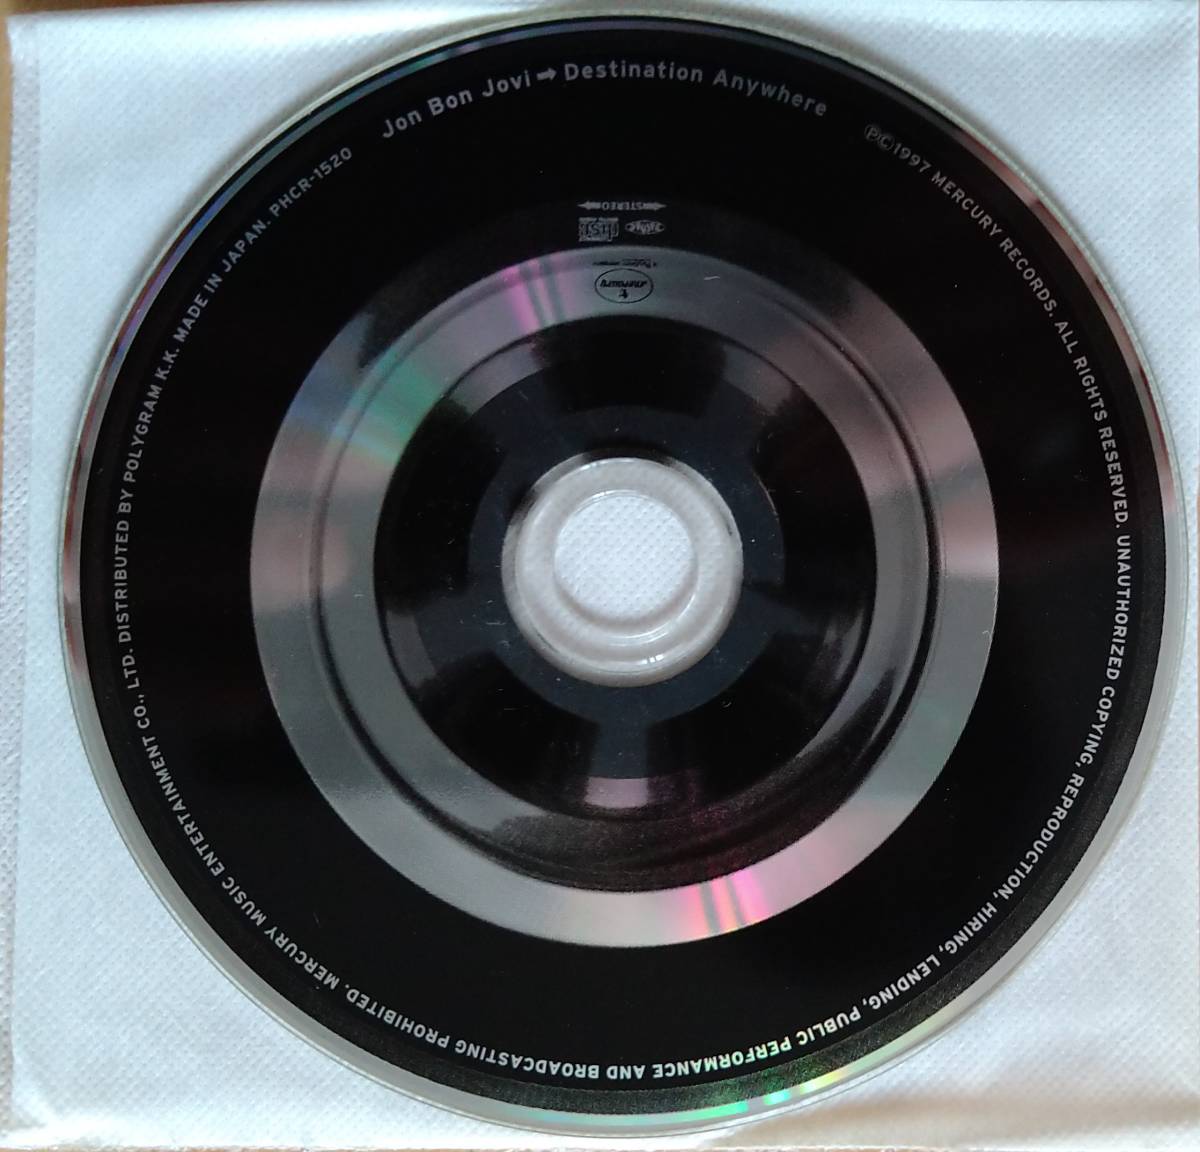 ☆即決！○ジョン ボン ジョヴィ：デスティネイション・エニィホエア BOX CD